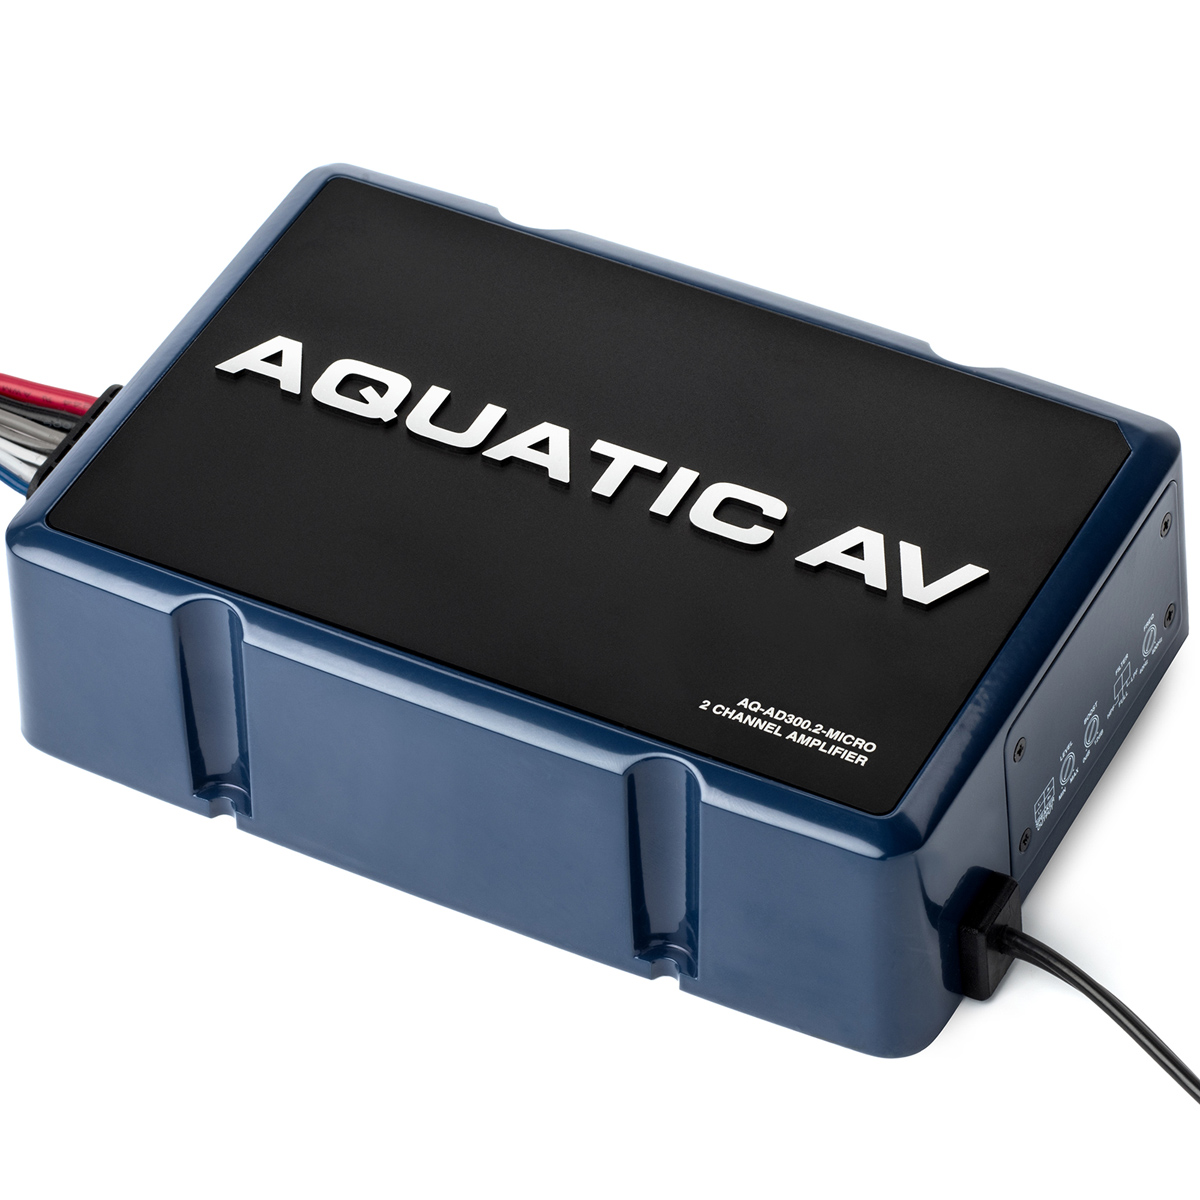 Aquatic AV 2 Channel 300W Amplifier